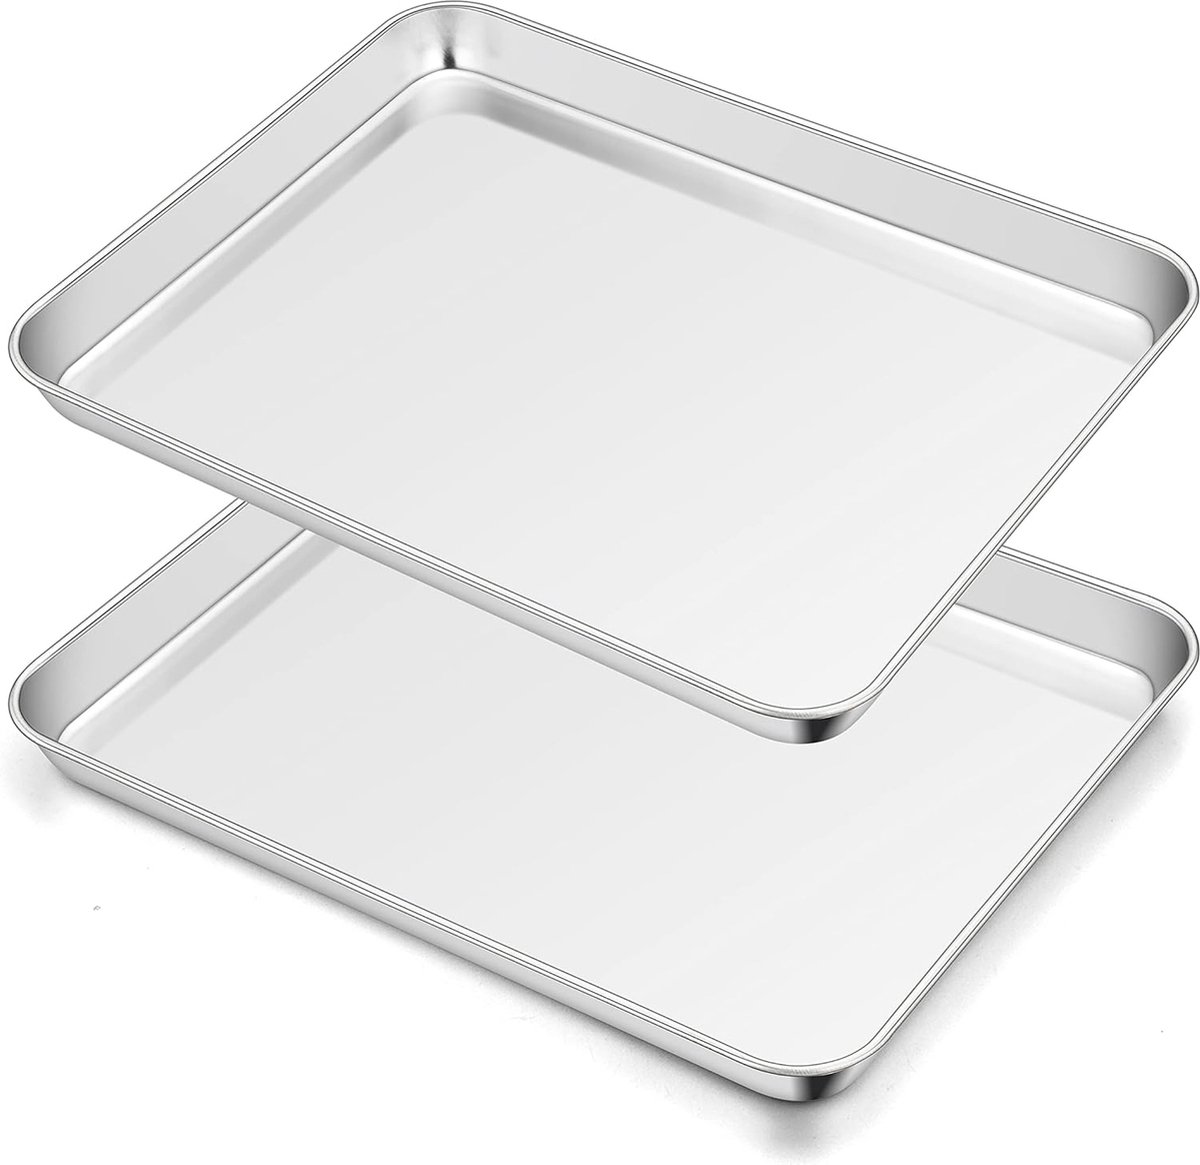 Bakplaat, 2 stuks roestvrijstalen taartplaten, bakplaat, rechthoekige ovenplaat voor bakken, braden, serveren, 40 x 30 x 2,5 cm, niet giftig en gezond, vaatwasmachinebestendig